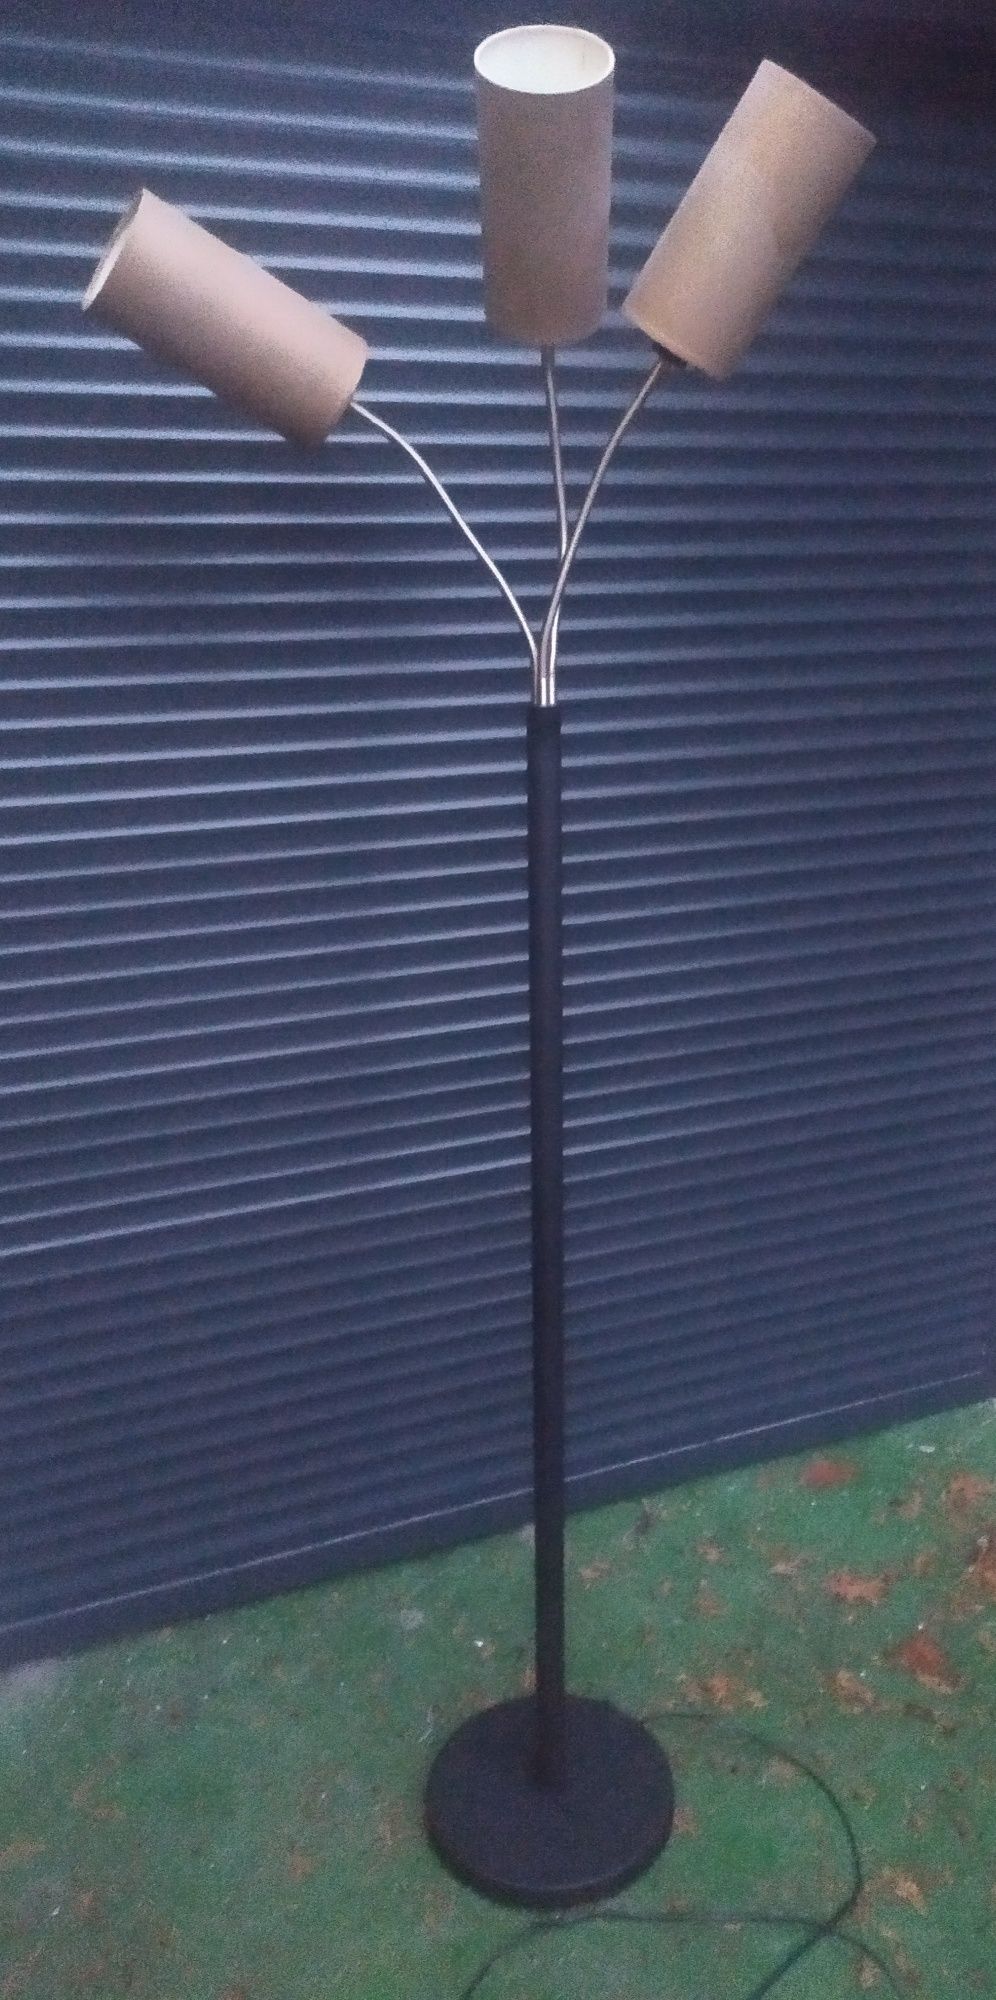 Lampa podłogowa stojąca wysoka 180 cm czarna - 3 ramiona